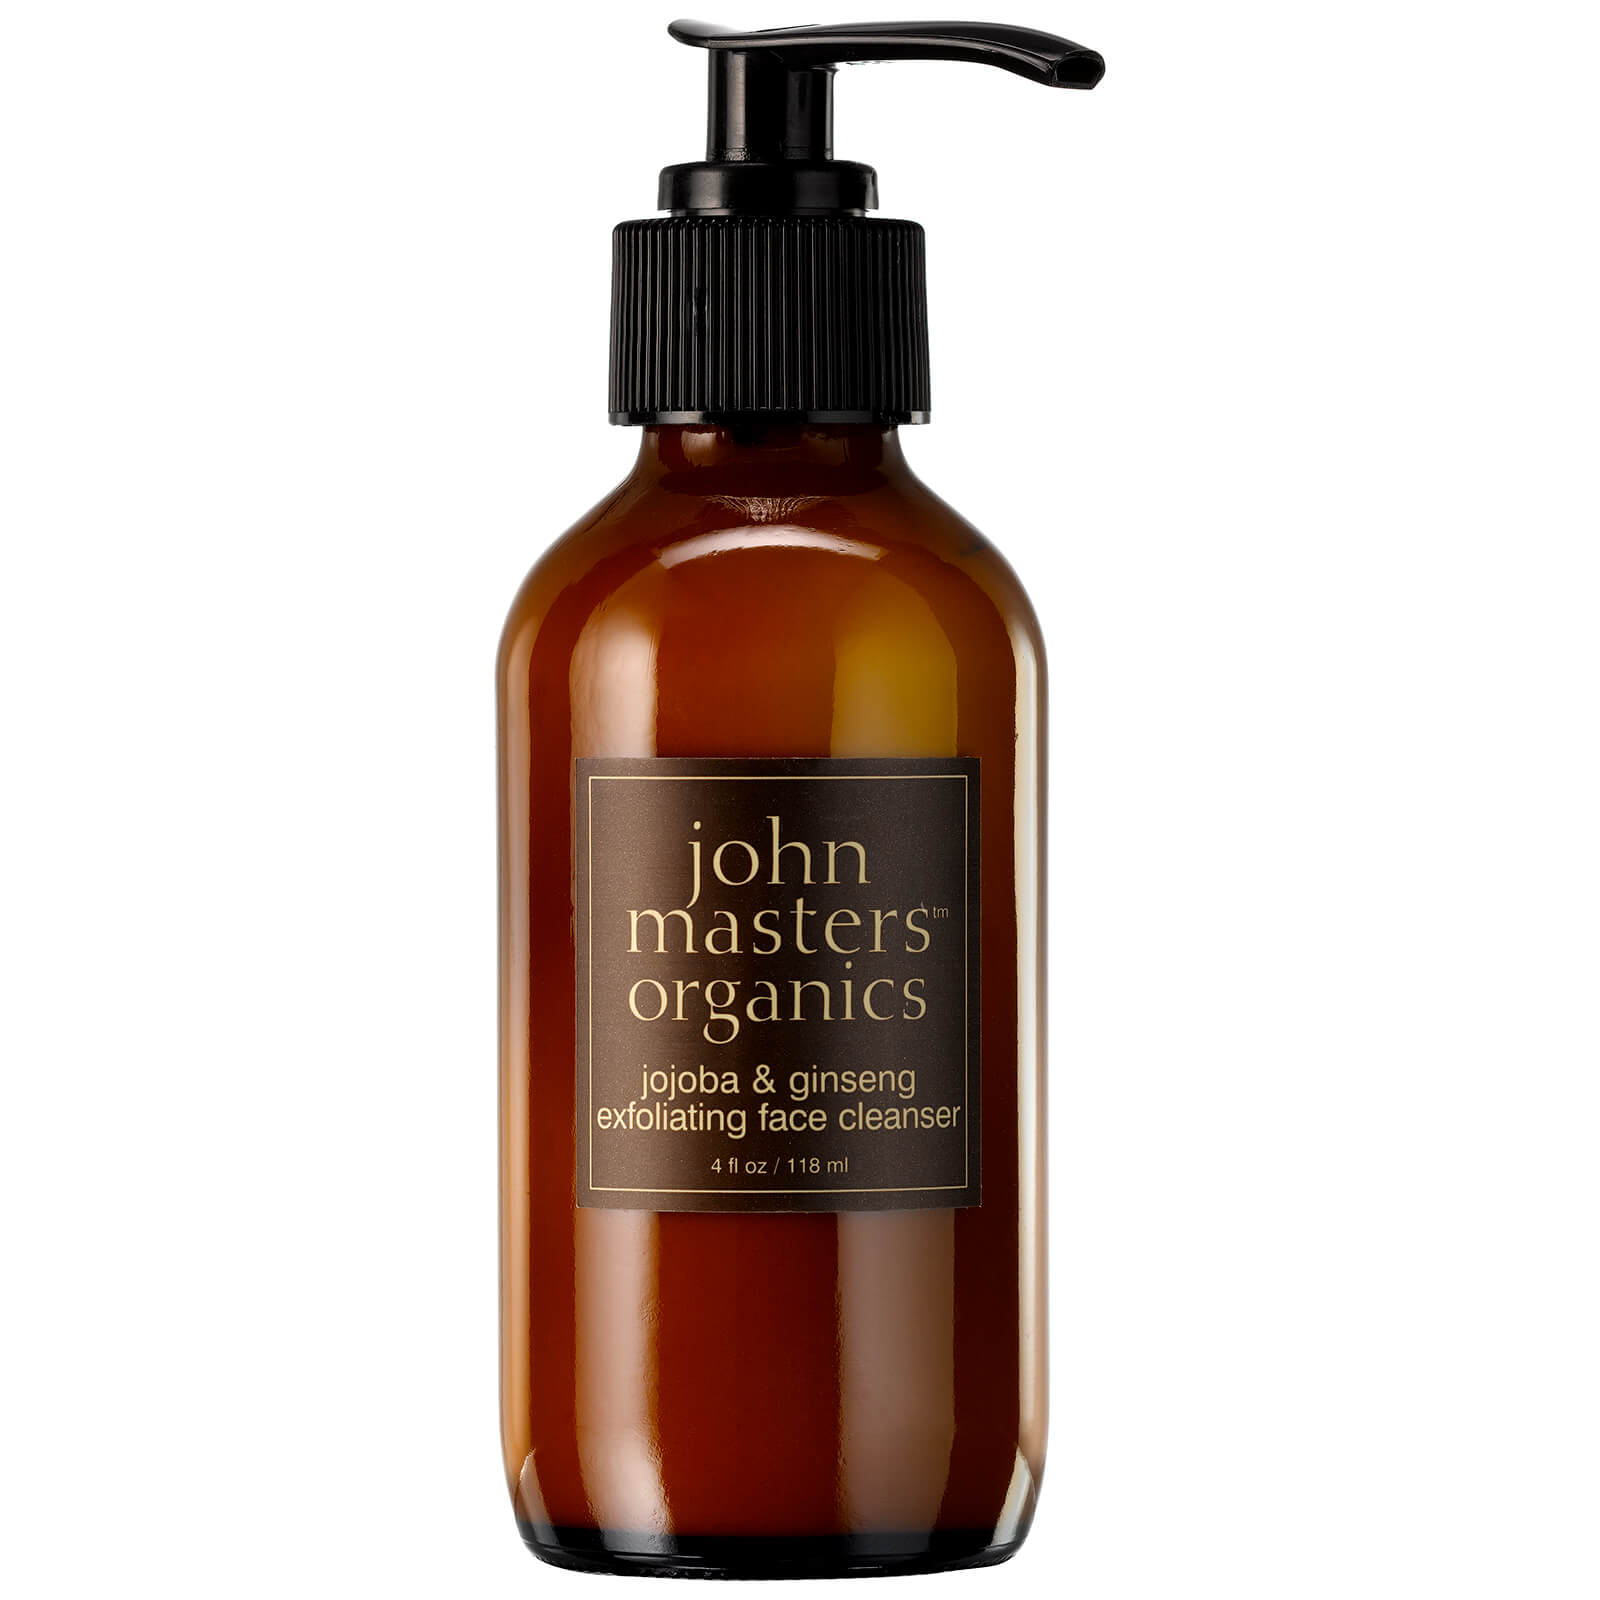 John Masters Organics Jojoba & Ginseng Exfoliating Face Cleanser 118ml